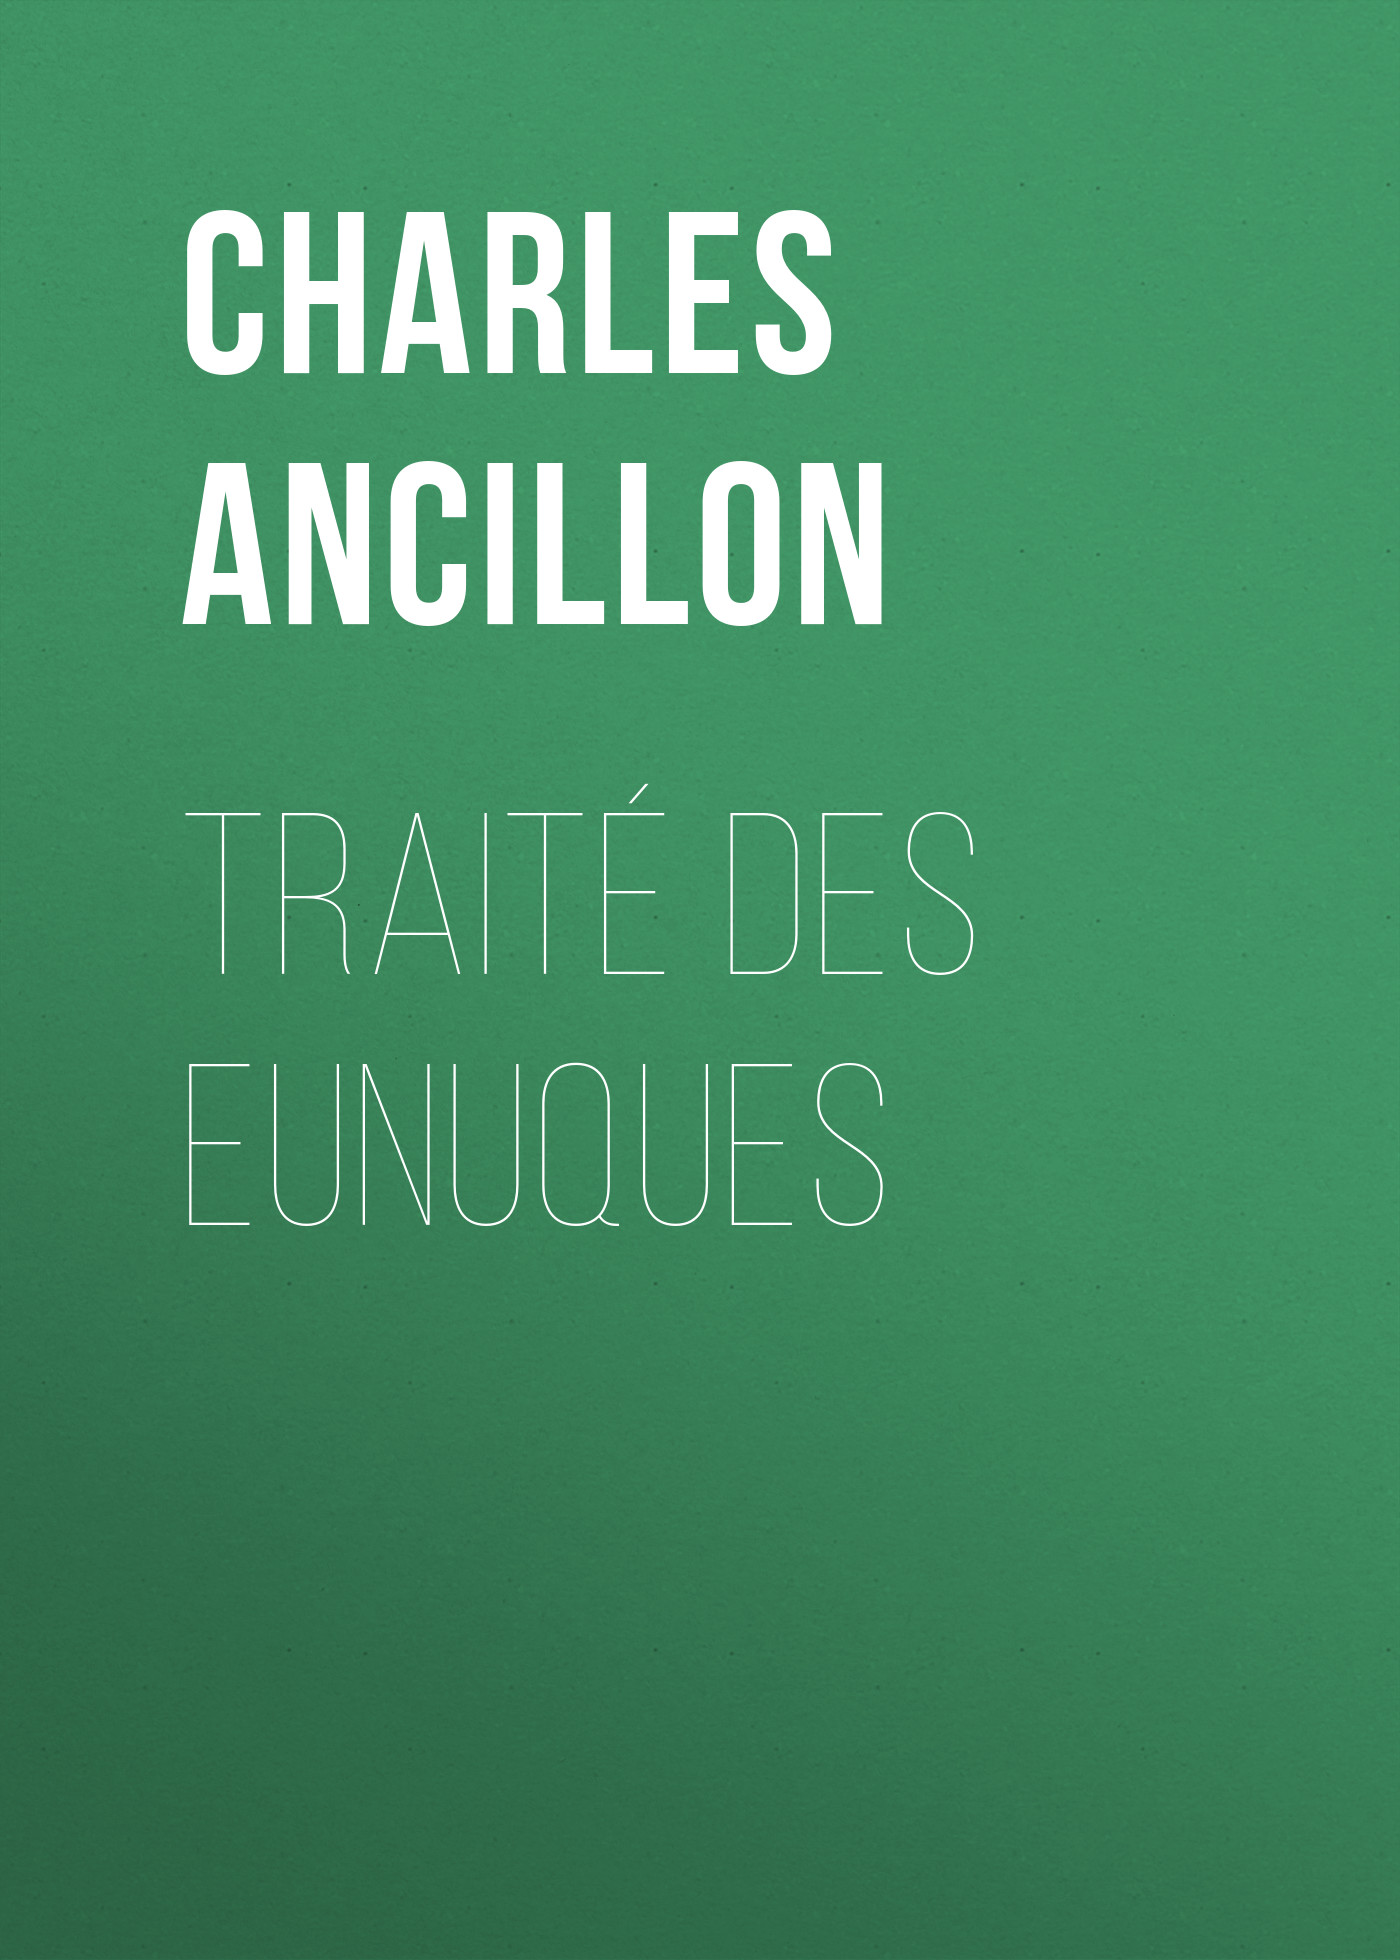 Книга Traité des eunuques из серии , созданная Charles Ancillon, может относится к жанру Иностранные языки, Зарубежная старинная литература, Зарубежная классика. Стоимость электронной книги Traité des eunuques с идентификатором 24172284 составляет 0 руб.